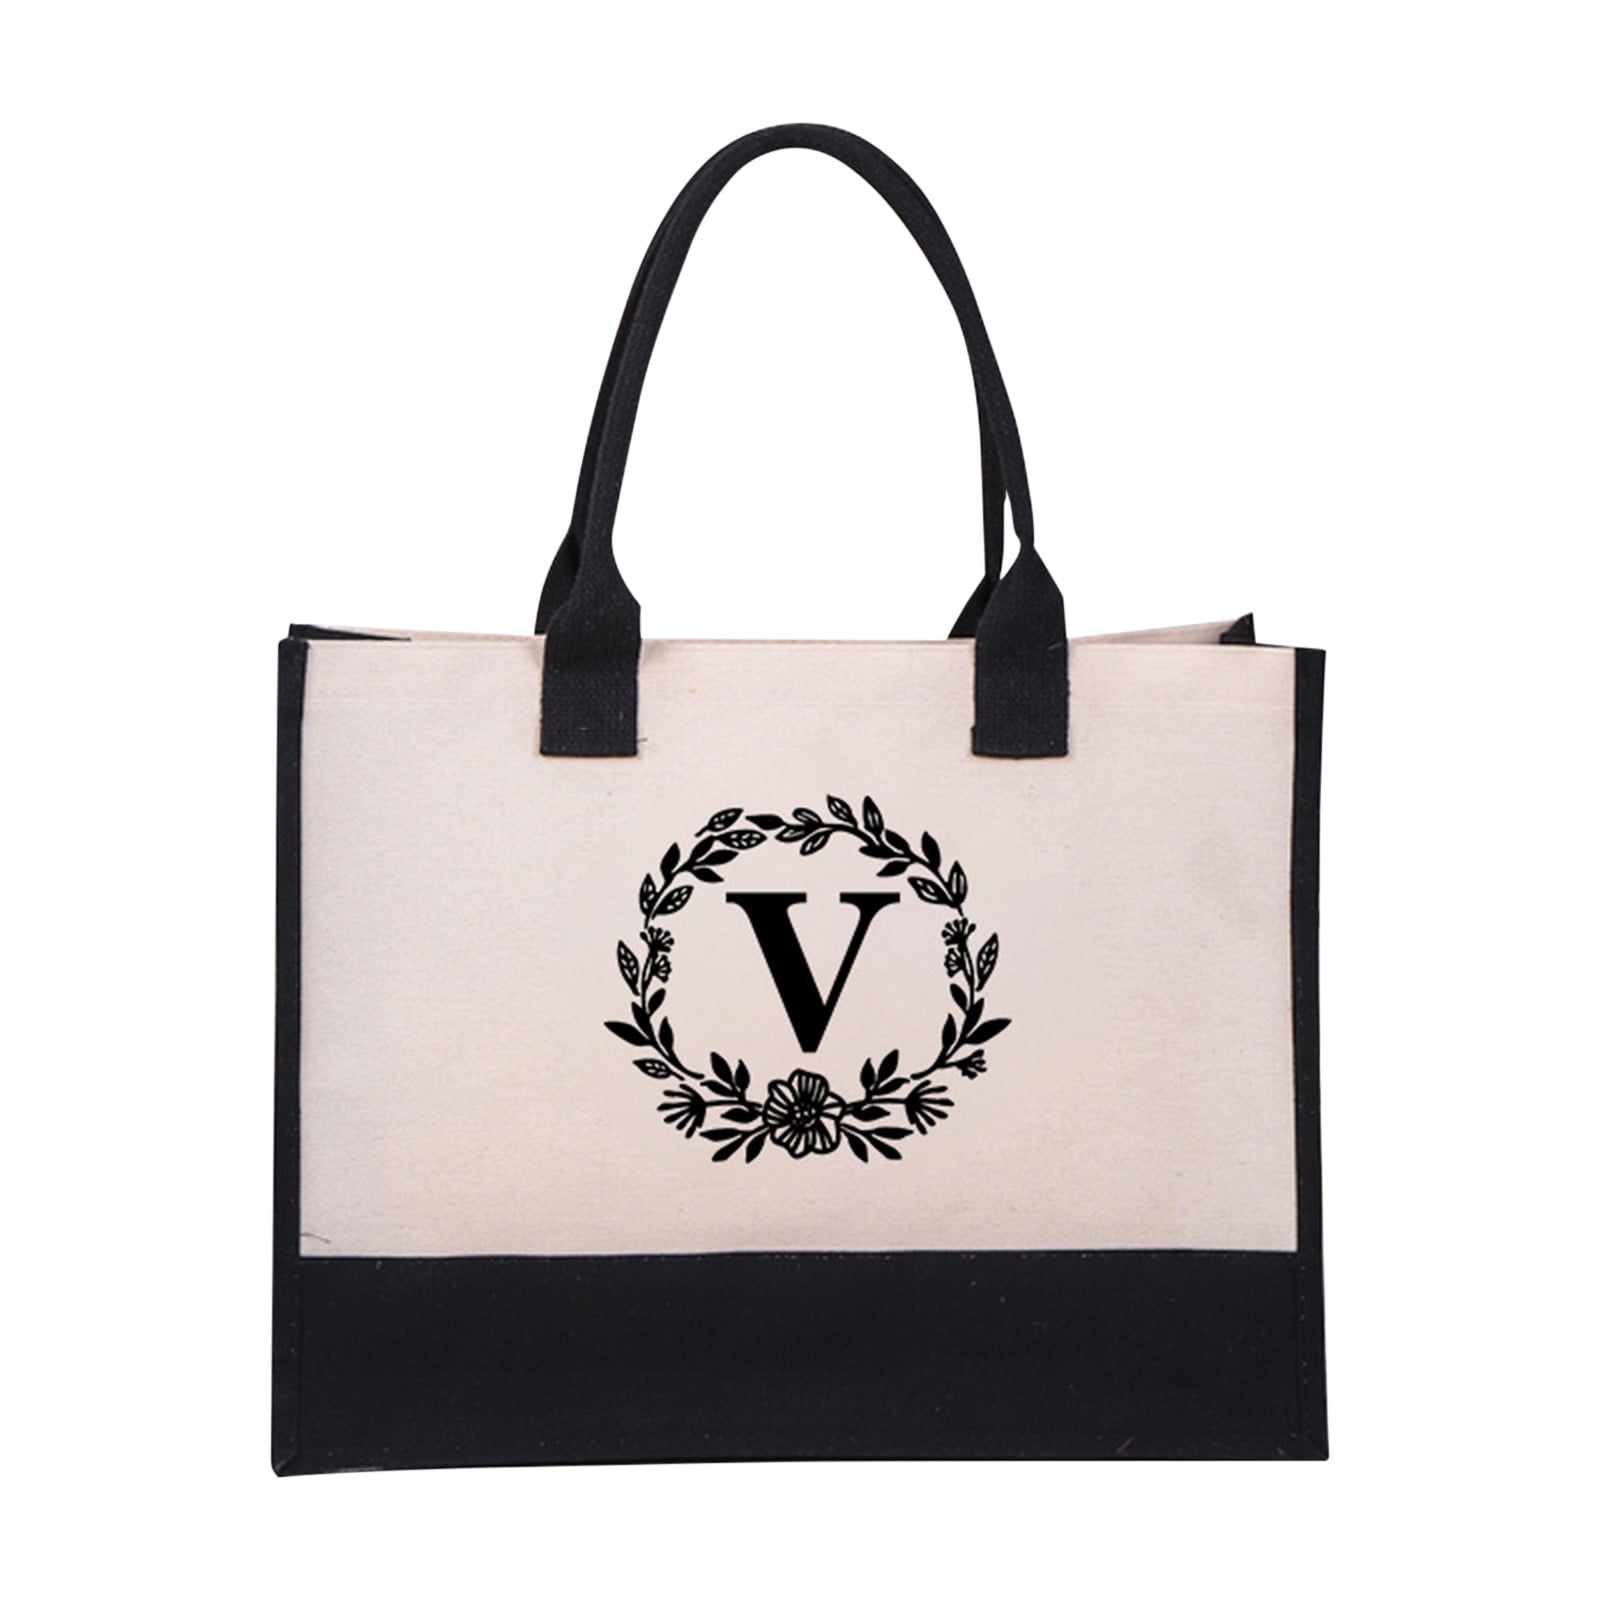 My Victorias Secret tote bag : r/handbags